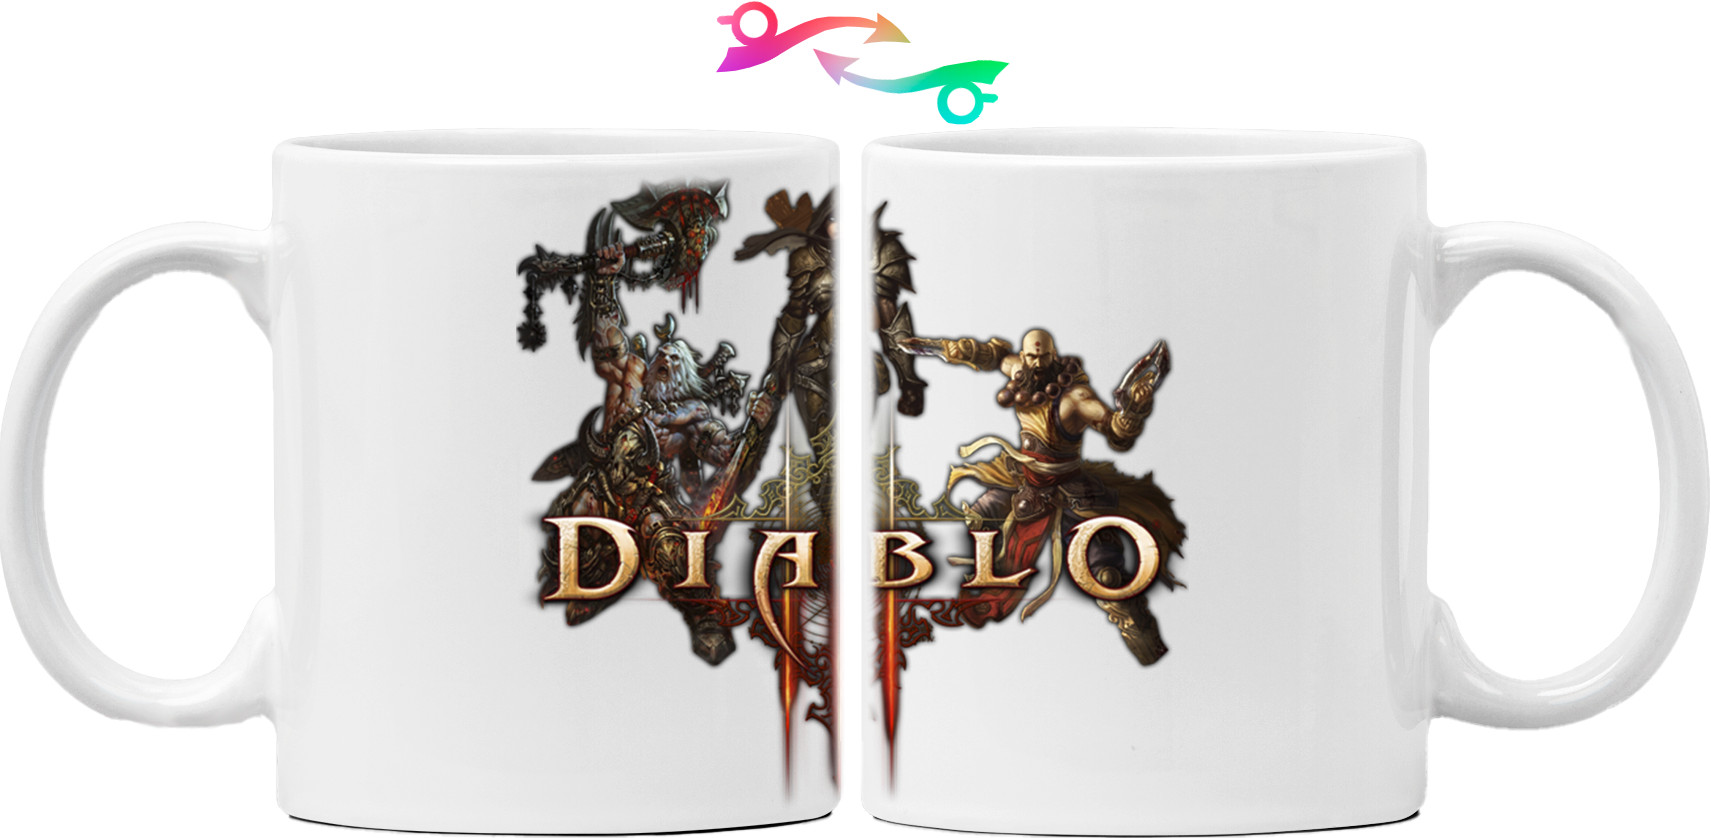 Diablo 3 logo 4